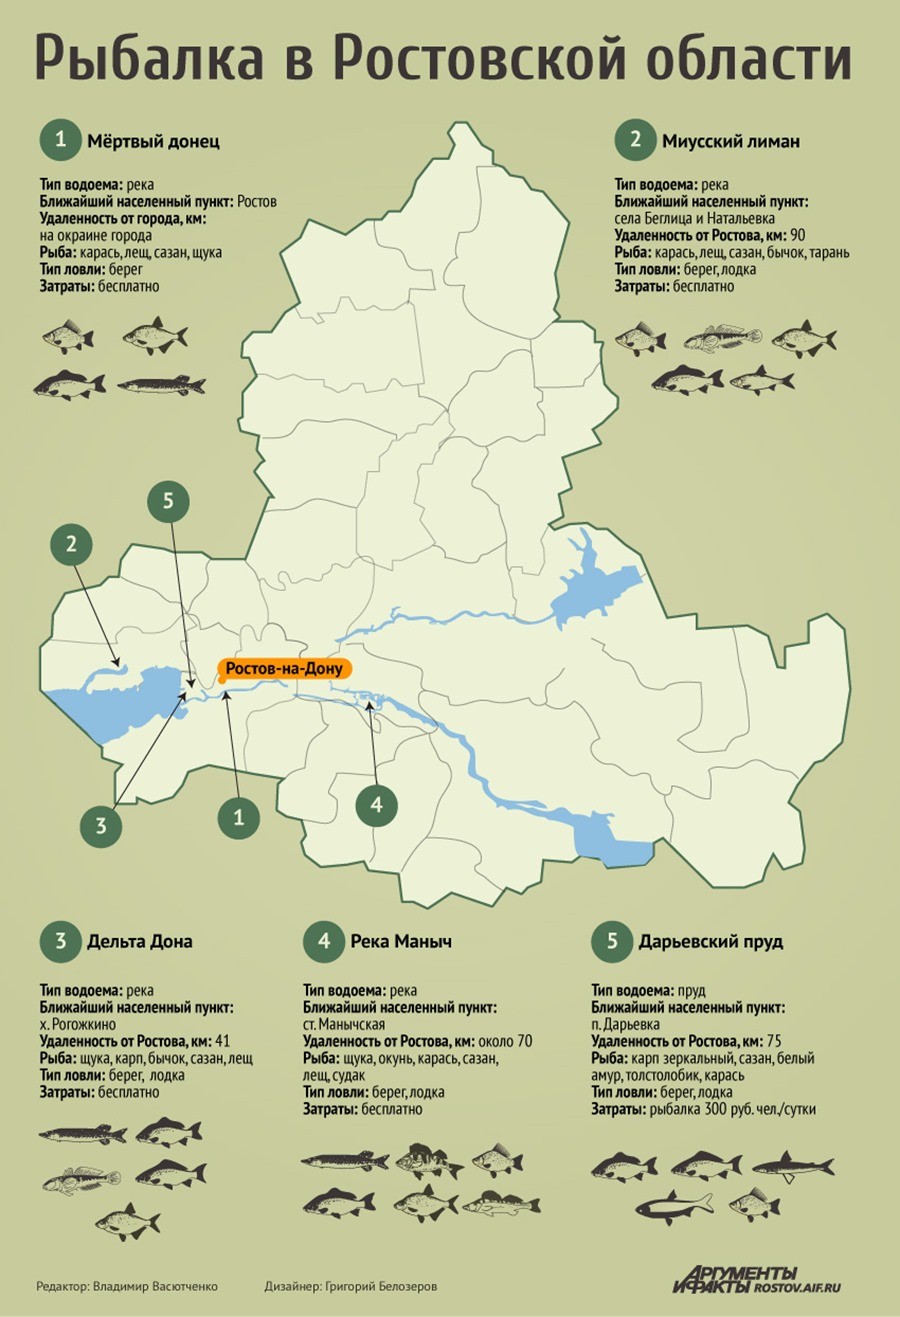 Карта рыболовных мест Ростовской области